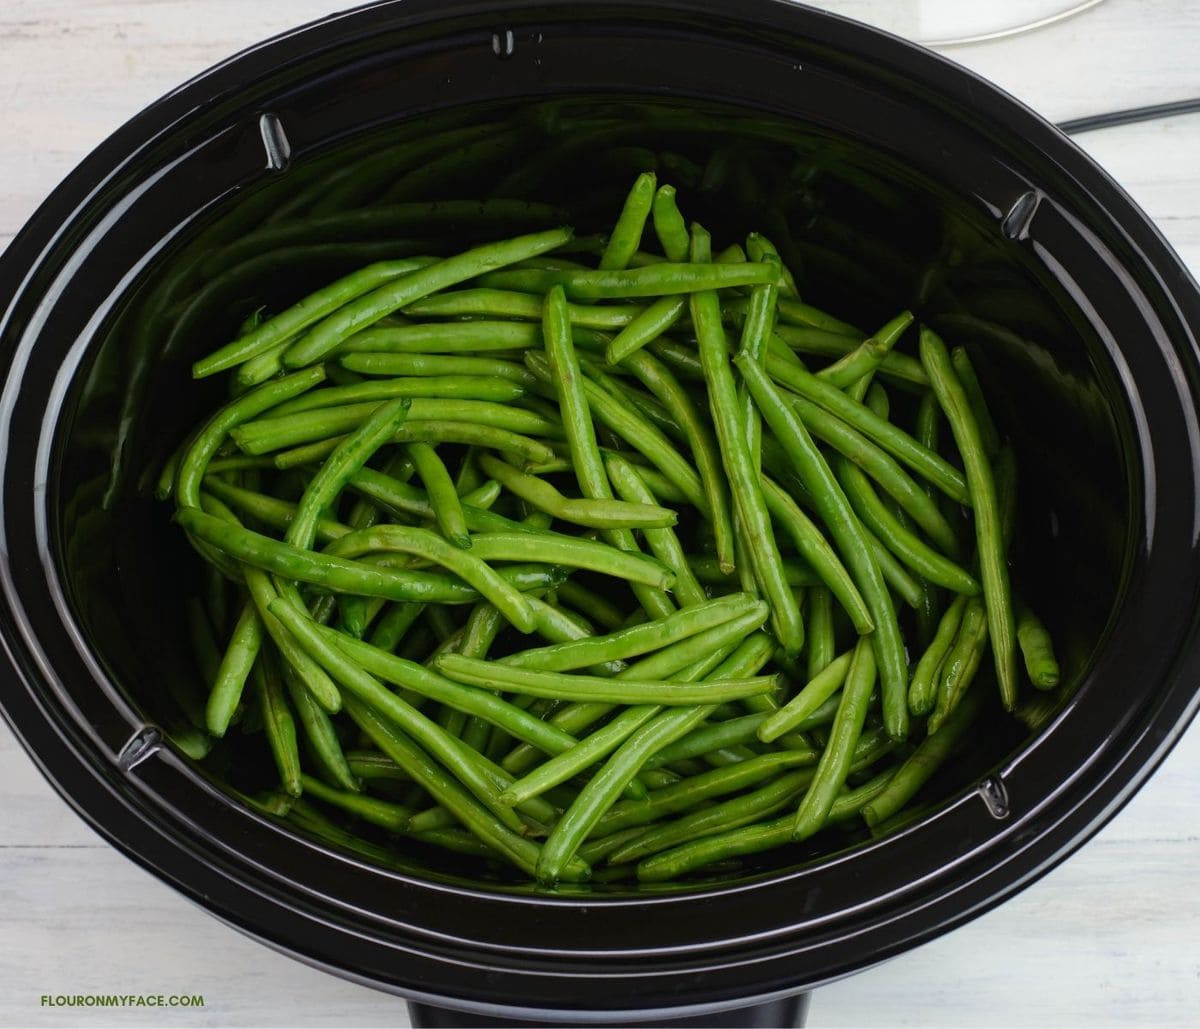 Green beans inside the crockpot.